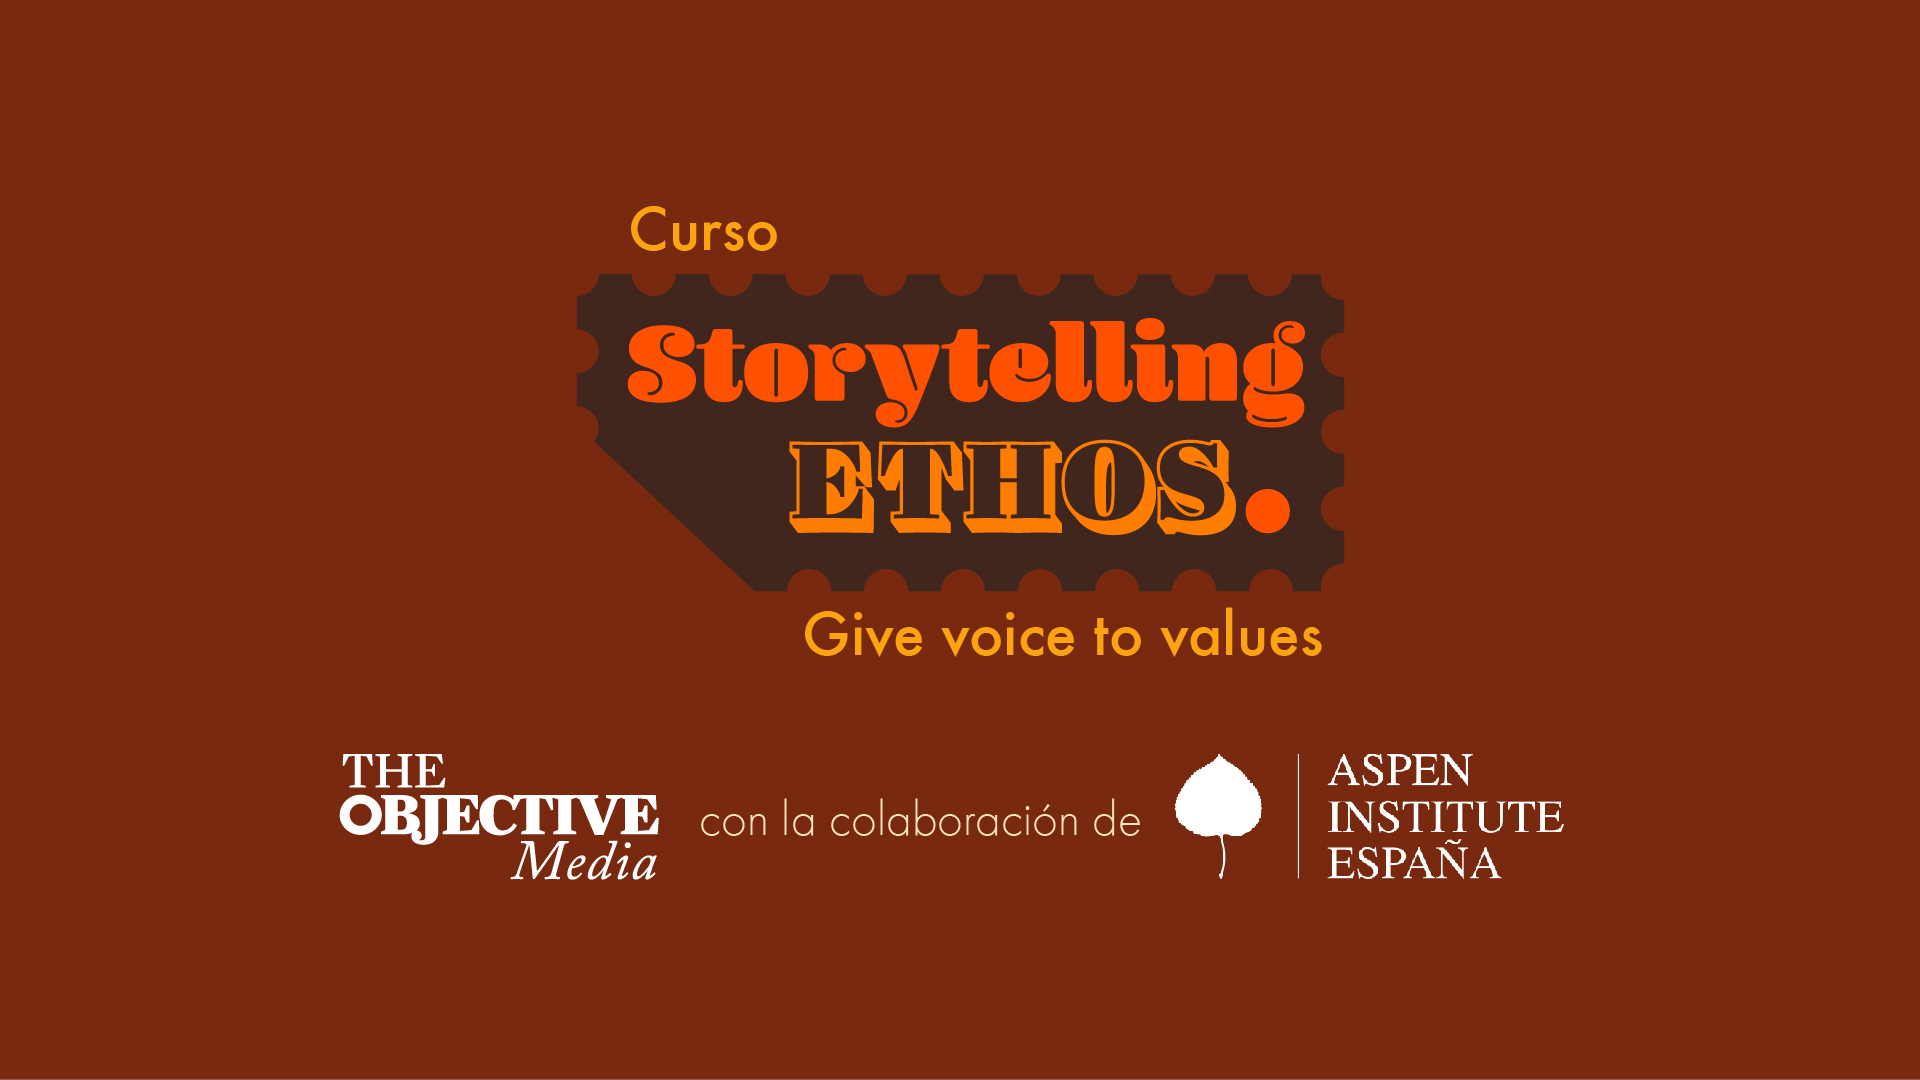 Llega la segunda edición del taller de Storytelling 'ethos'